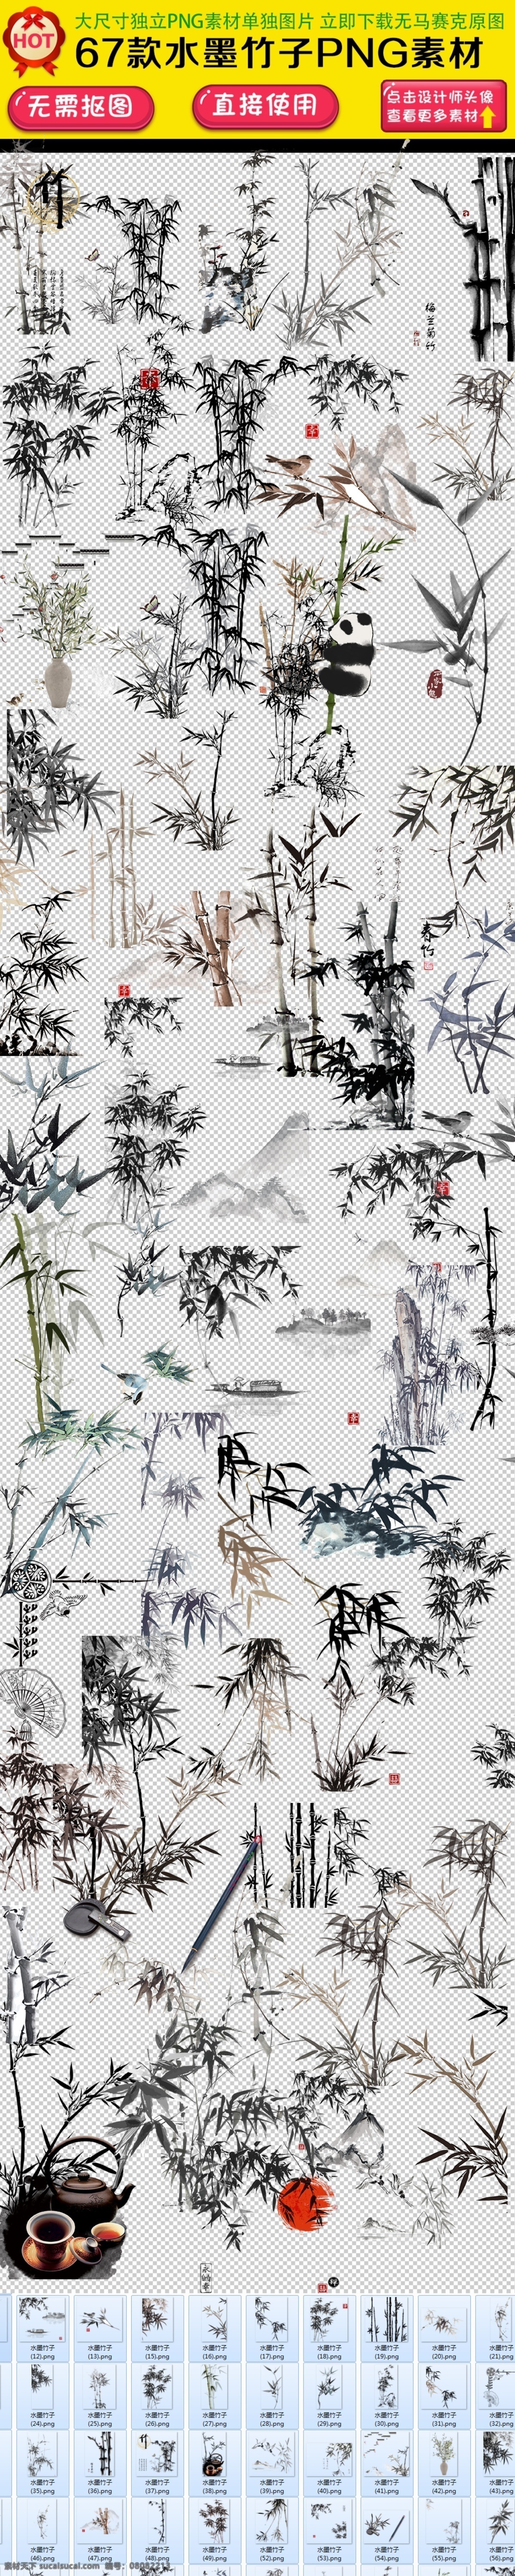 竹子图片 竹子 竹叶 中国风 墨竹 水彩画 文化艺术 绘画书法